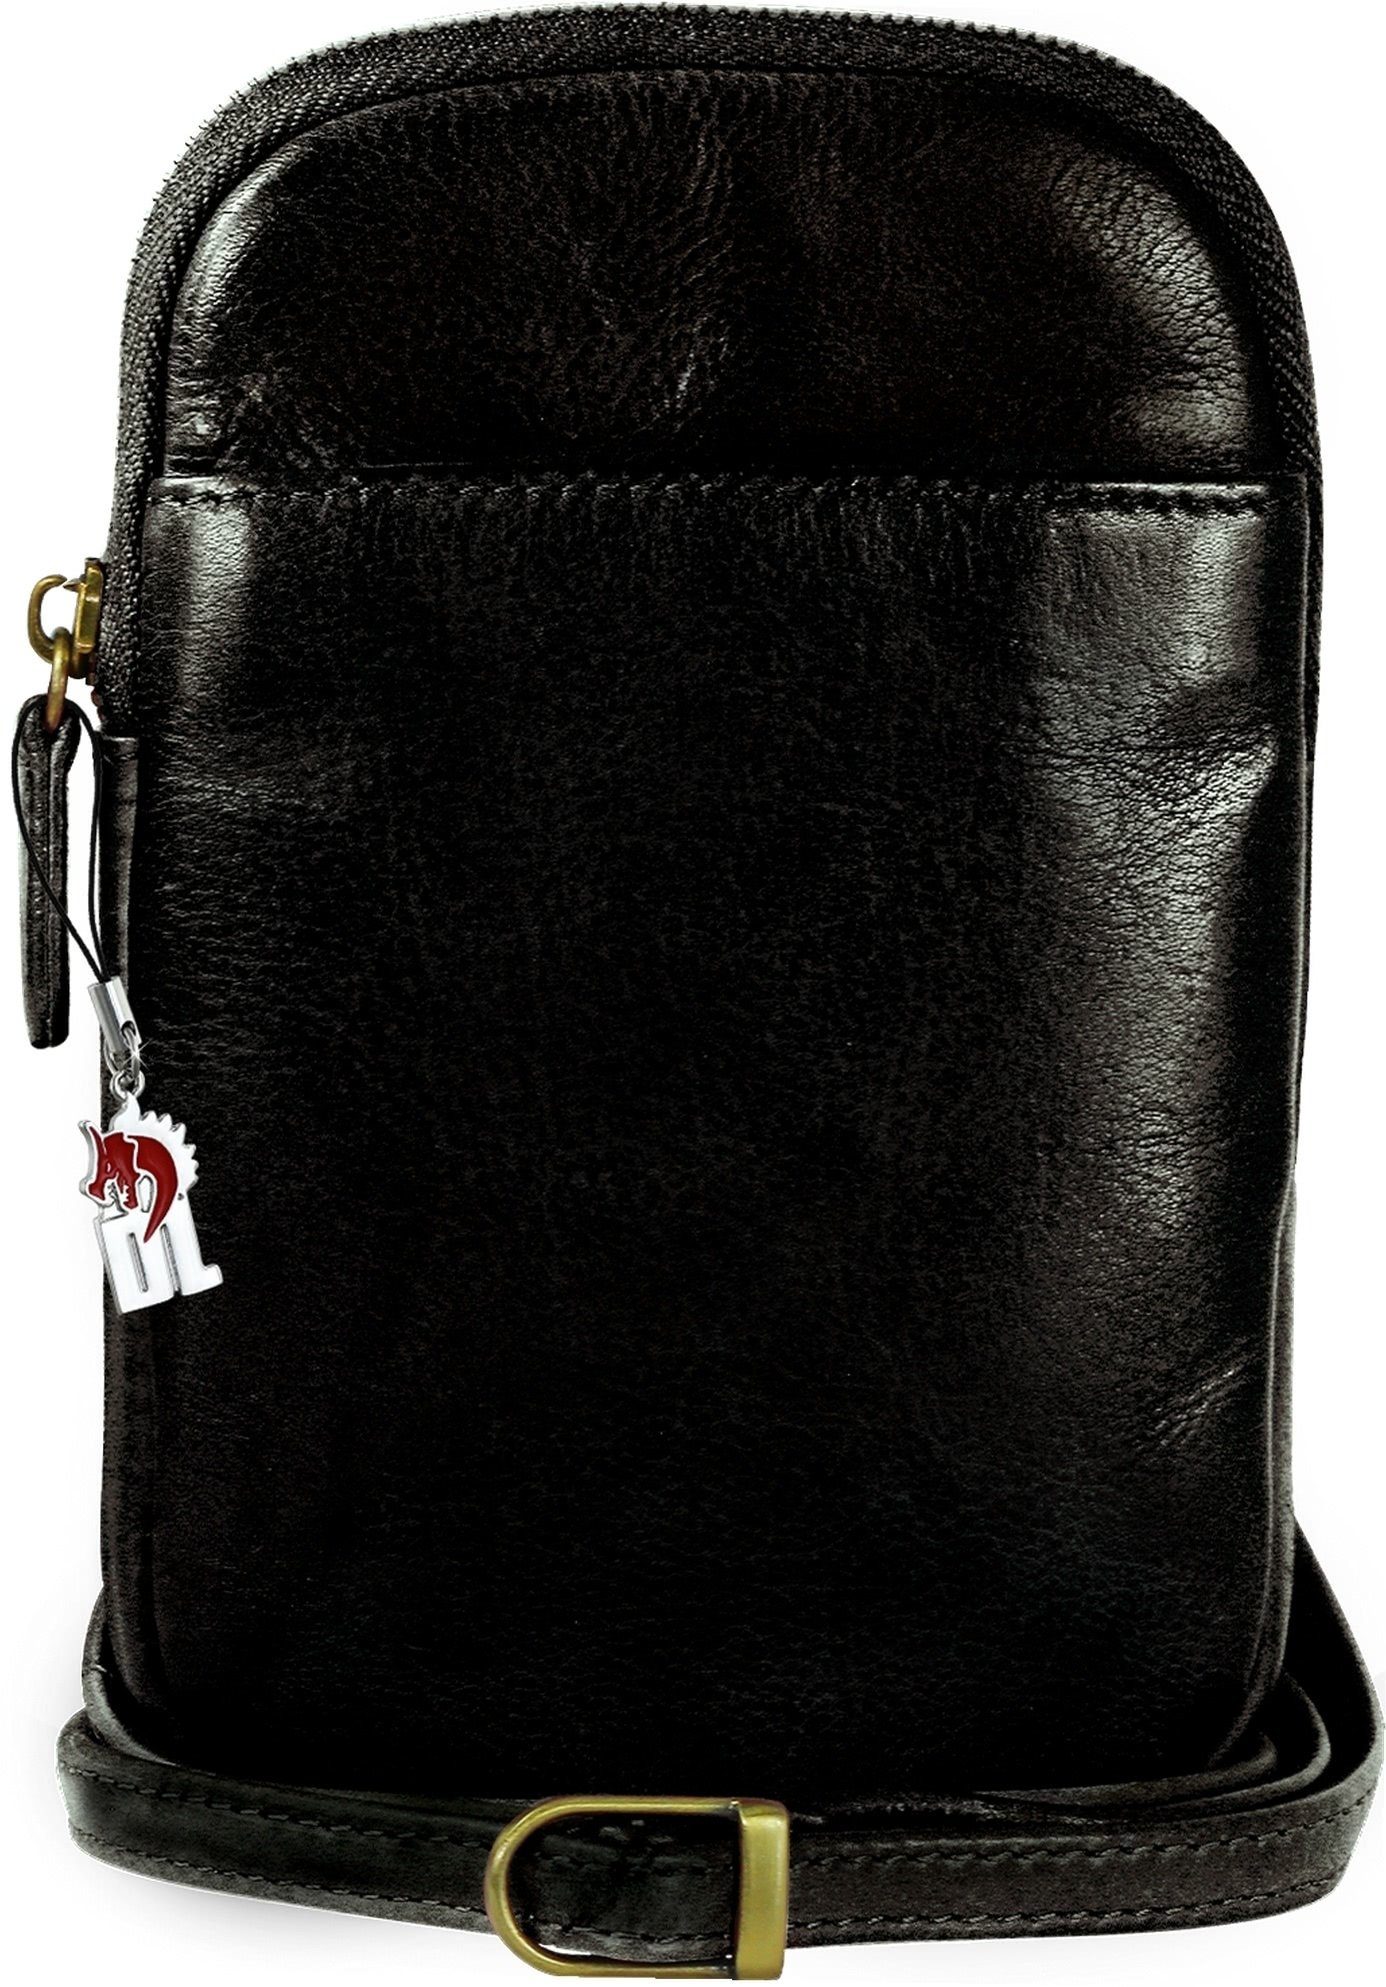 Herren schwarz, in ca. Handtasche Handtasche aus Damen, (Handtasche), Echtleder Tasche DrachenLeder Breite 13cm DrachenLeder Tasche Damen